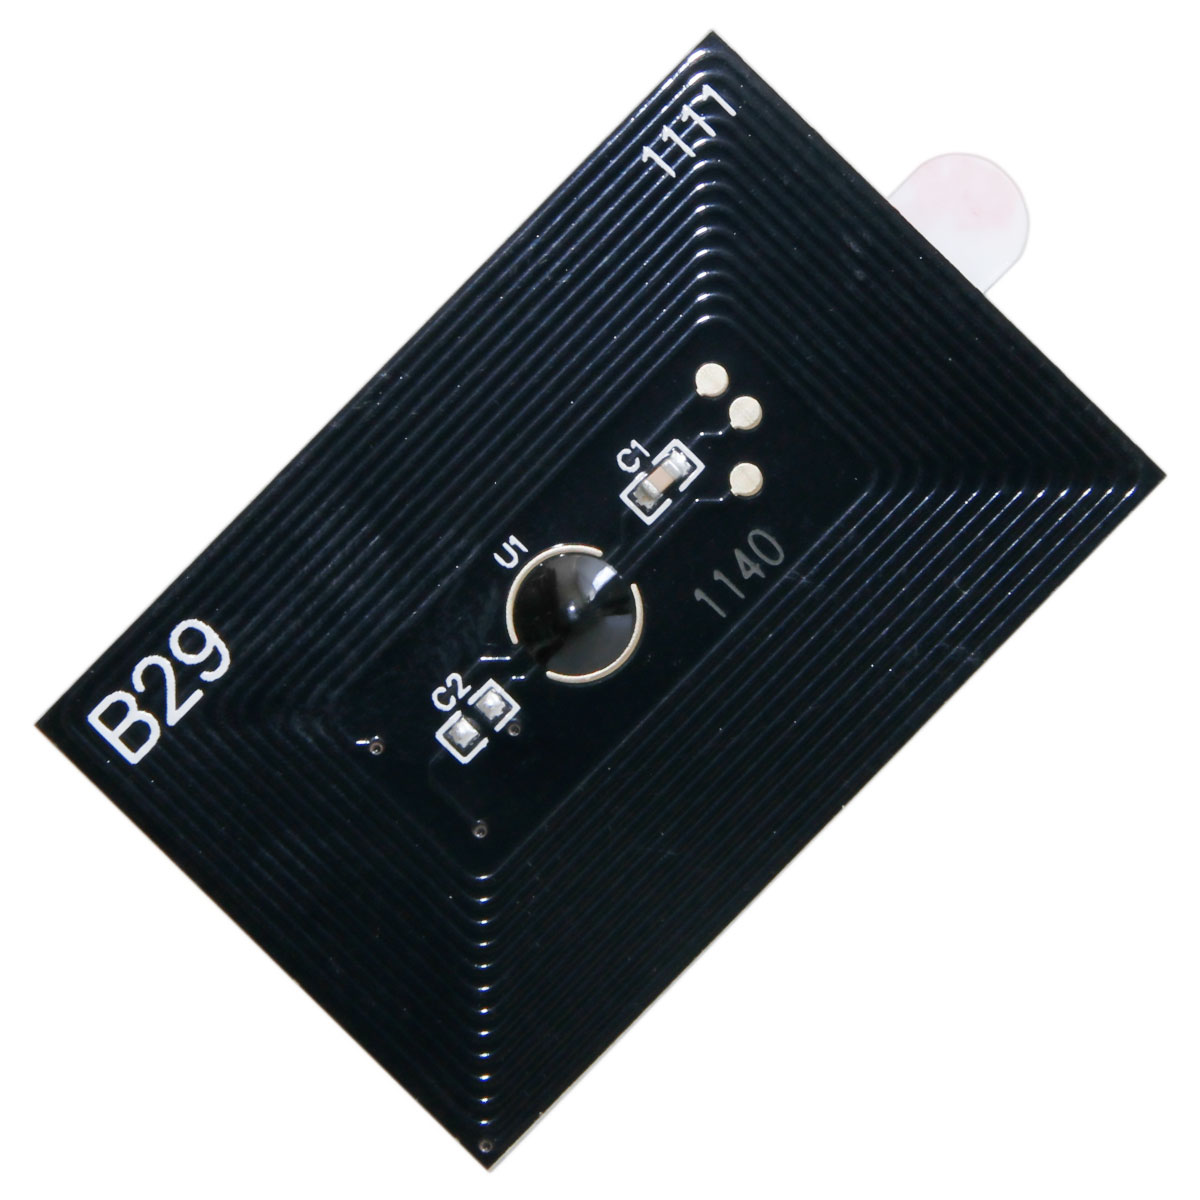 Chip zliczający Kyocera-Mita ECOSYS M2035